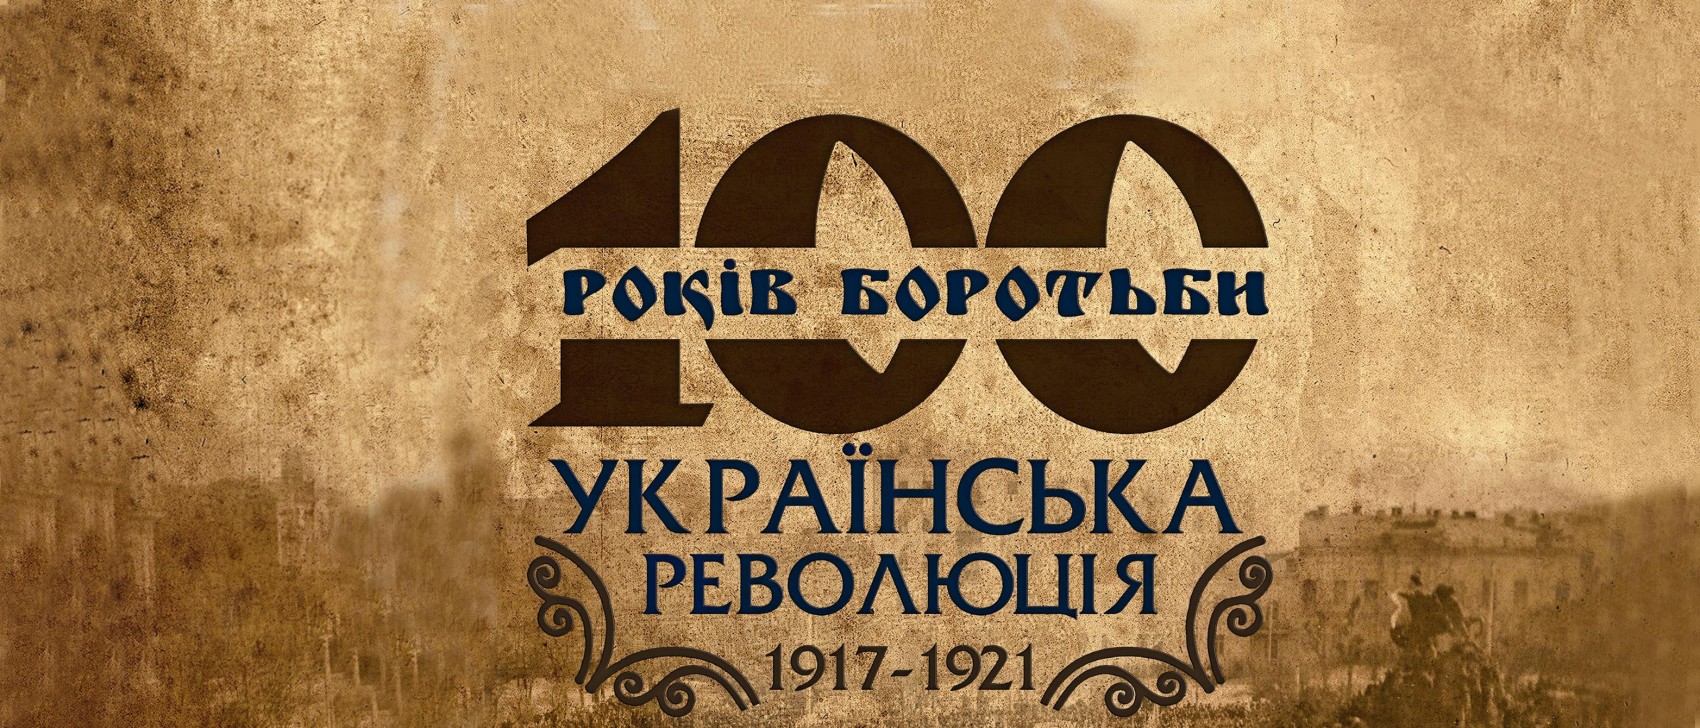 Як добре Ви знаєте місця Української революції 1917-1921 рр?